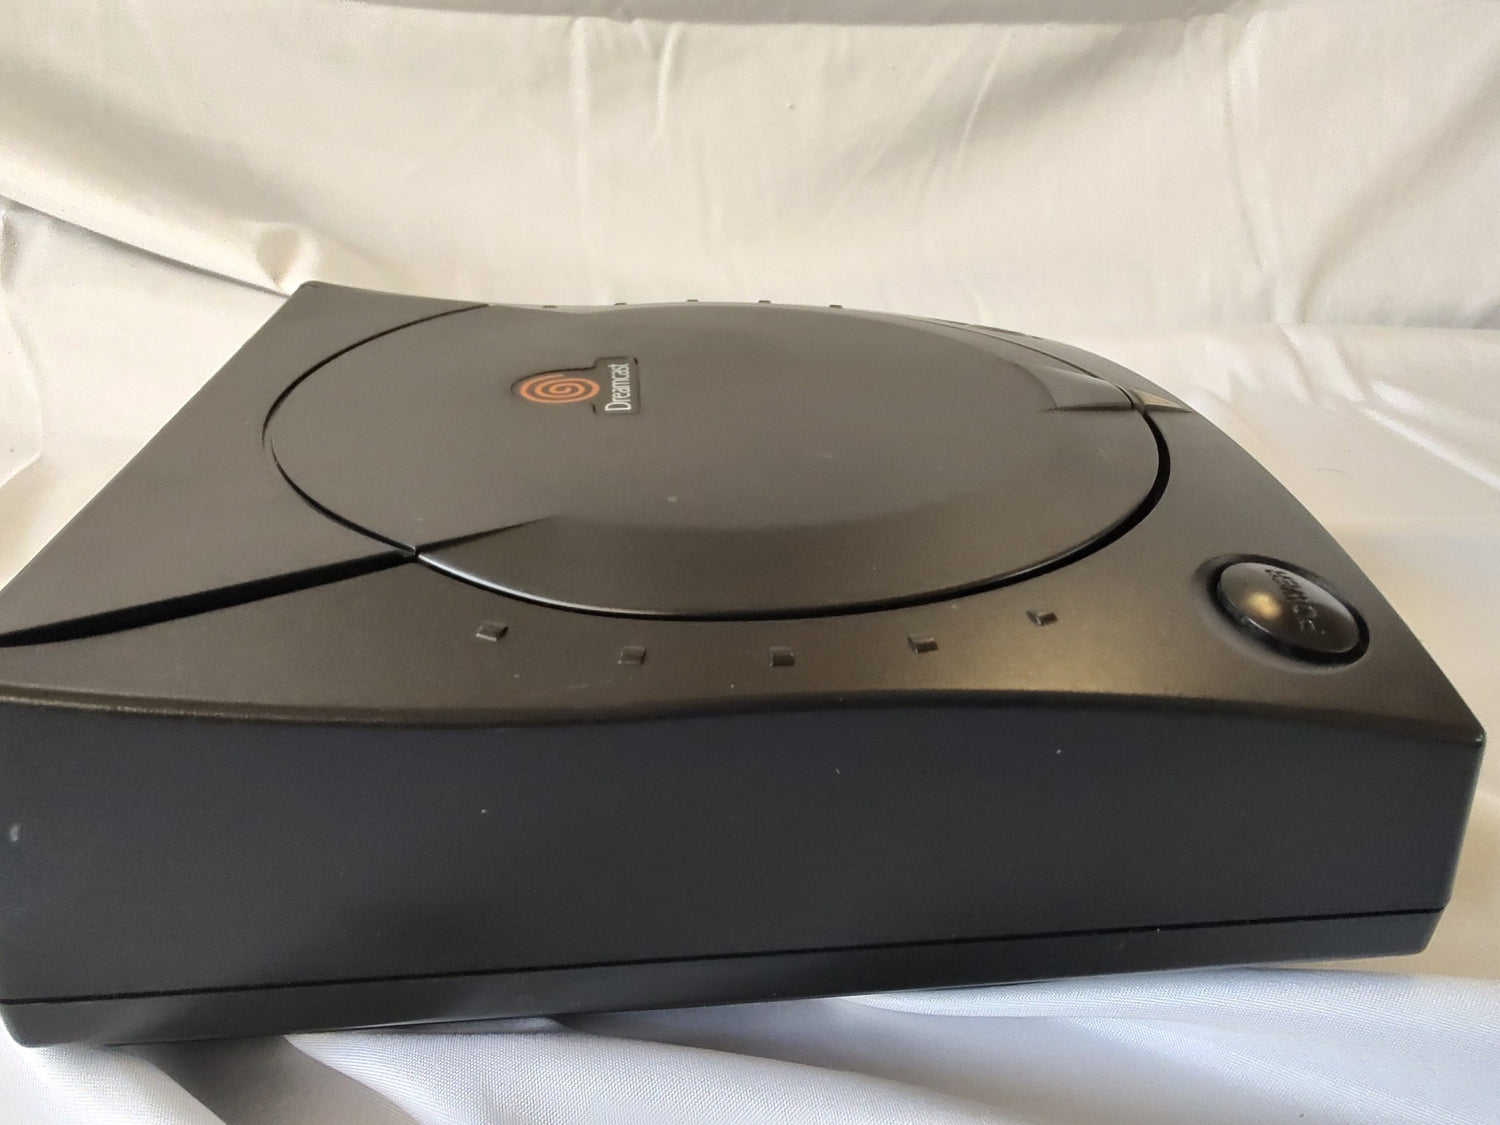 SEGA Dreamcast Black Color Model Limited Console set (HKT-3000 